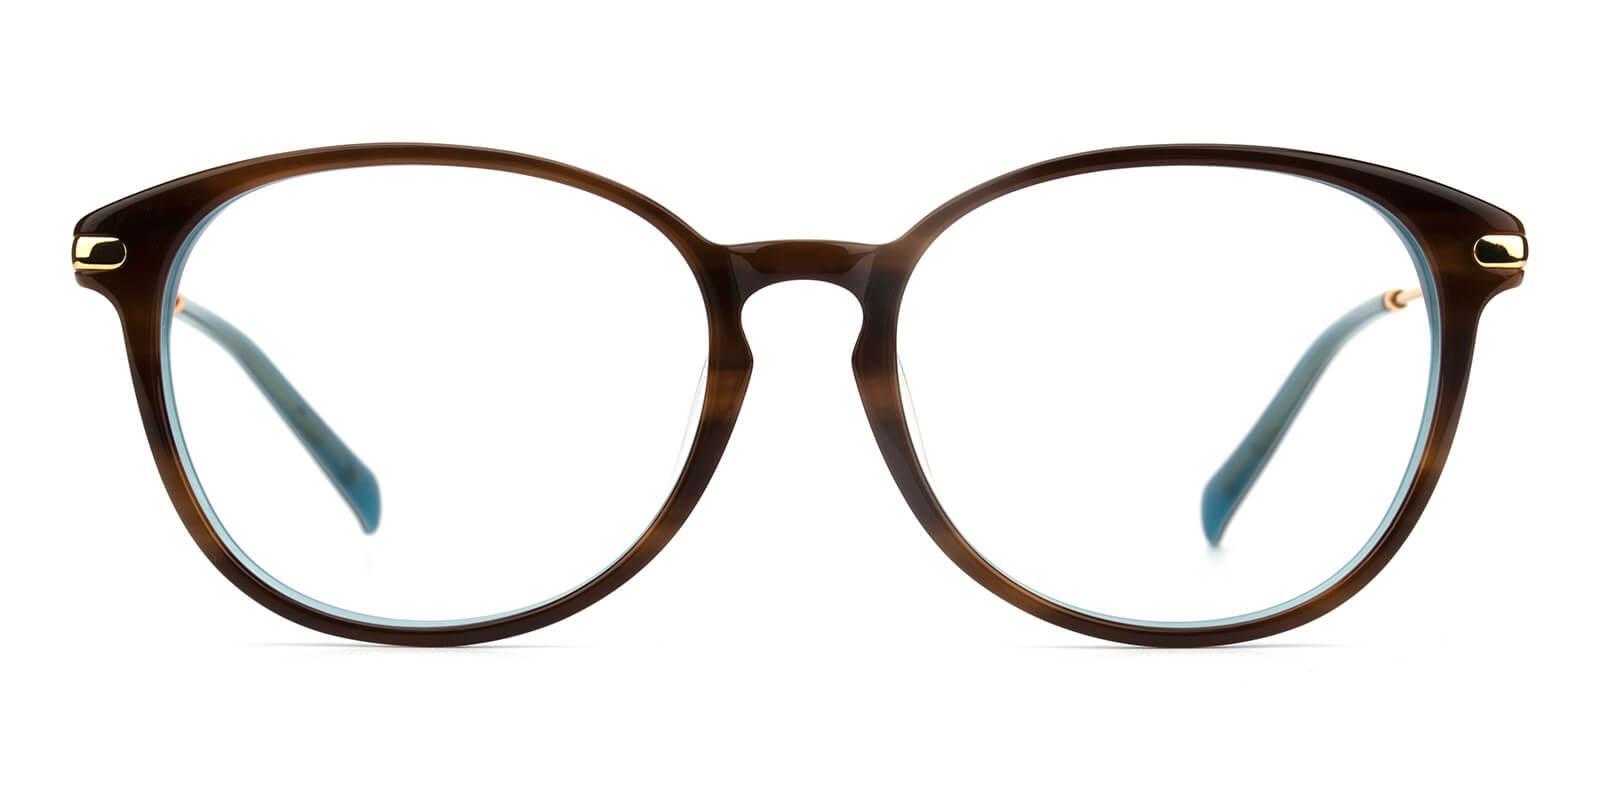 Synopsis Tortoise Acetate Eyeglasses , UniversalBridgeFit Frames from ABBE Glasses